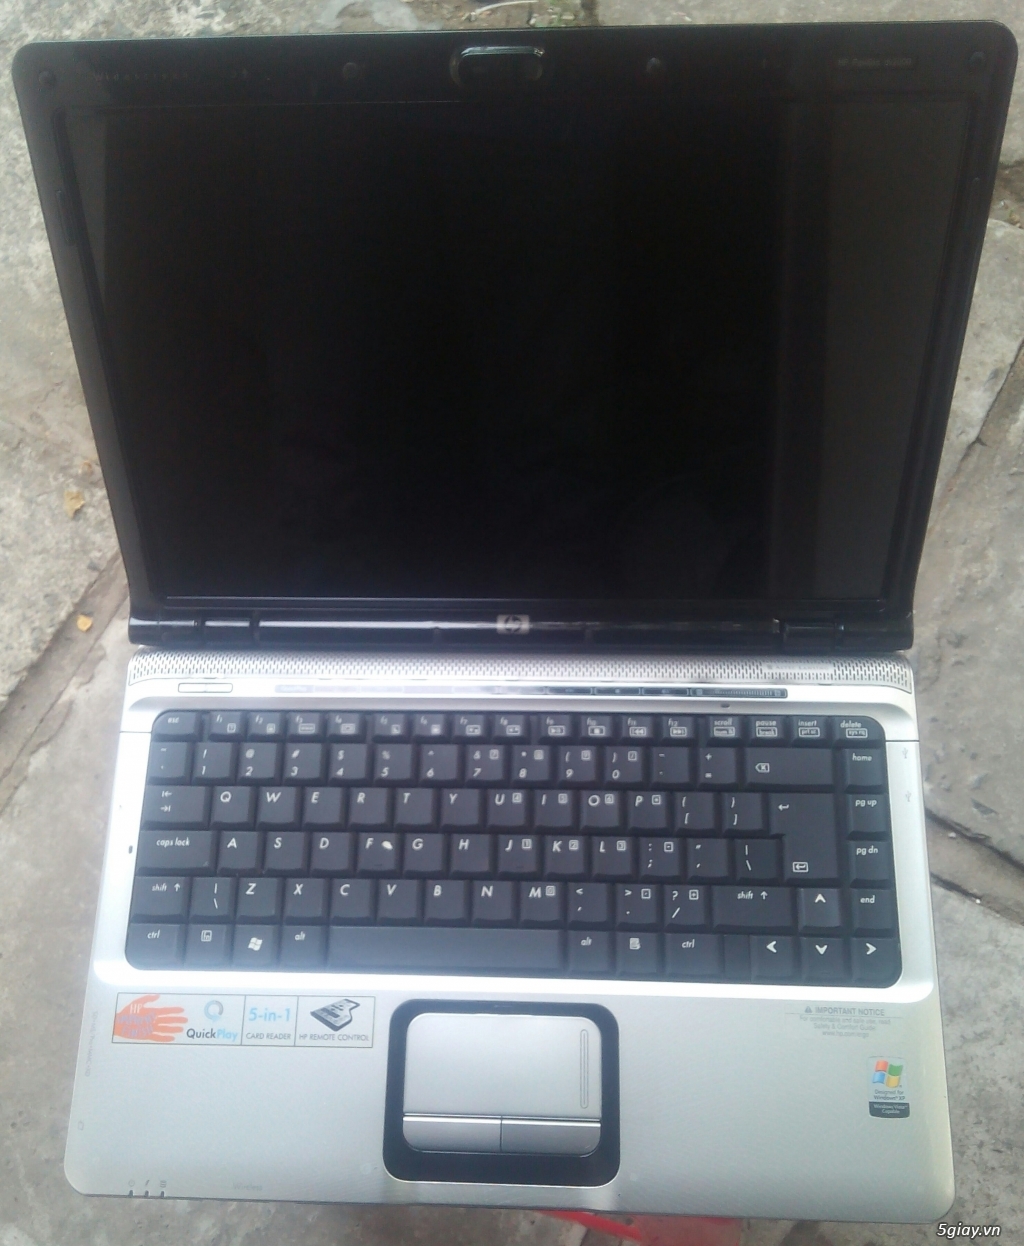 Laptop HP DV2000 Core 2 Duo - 3